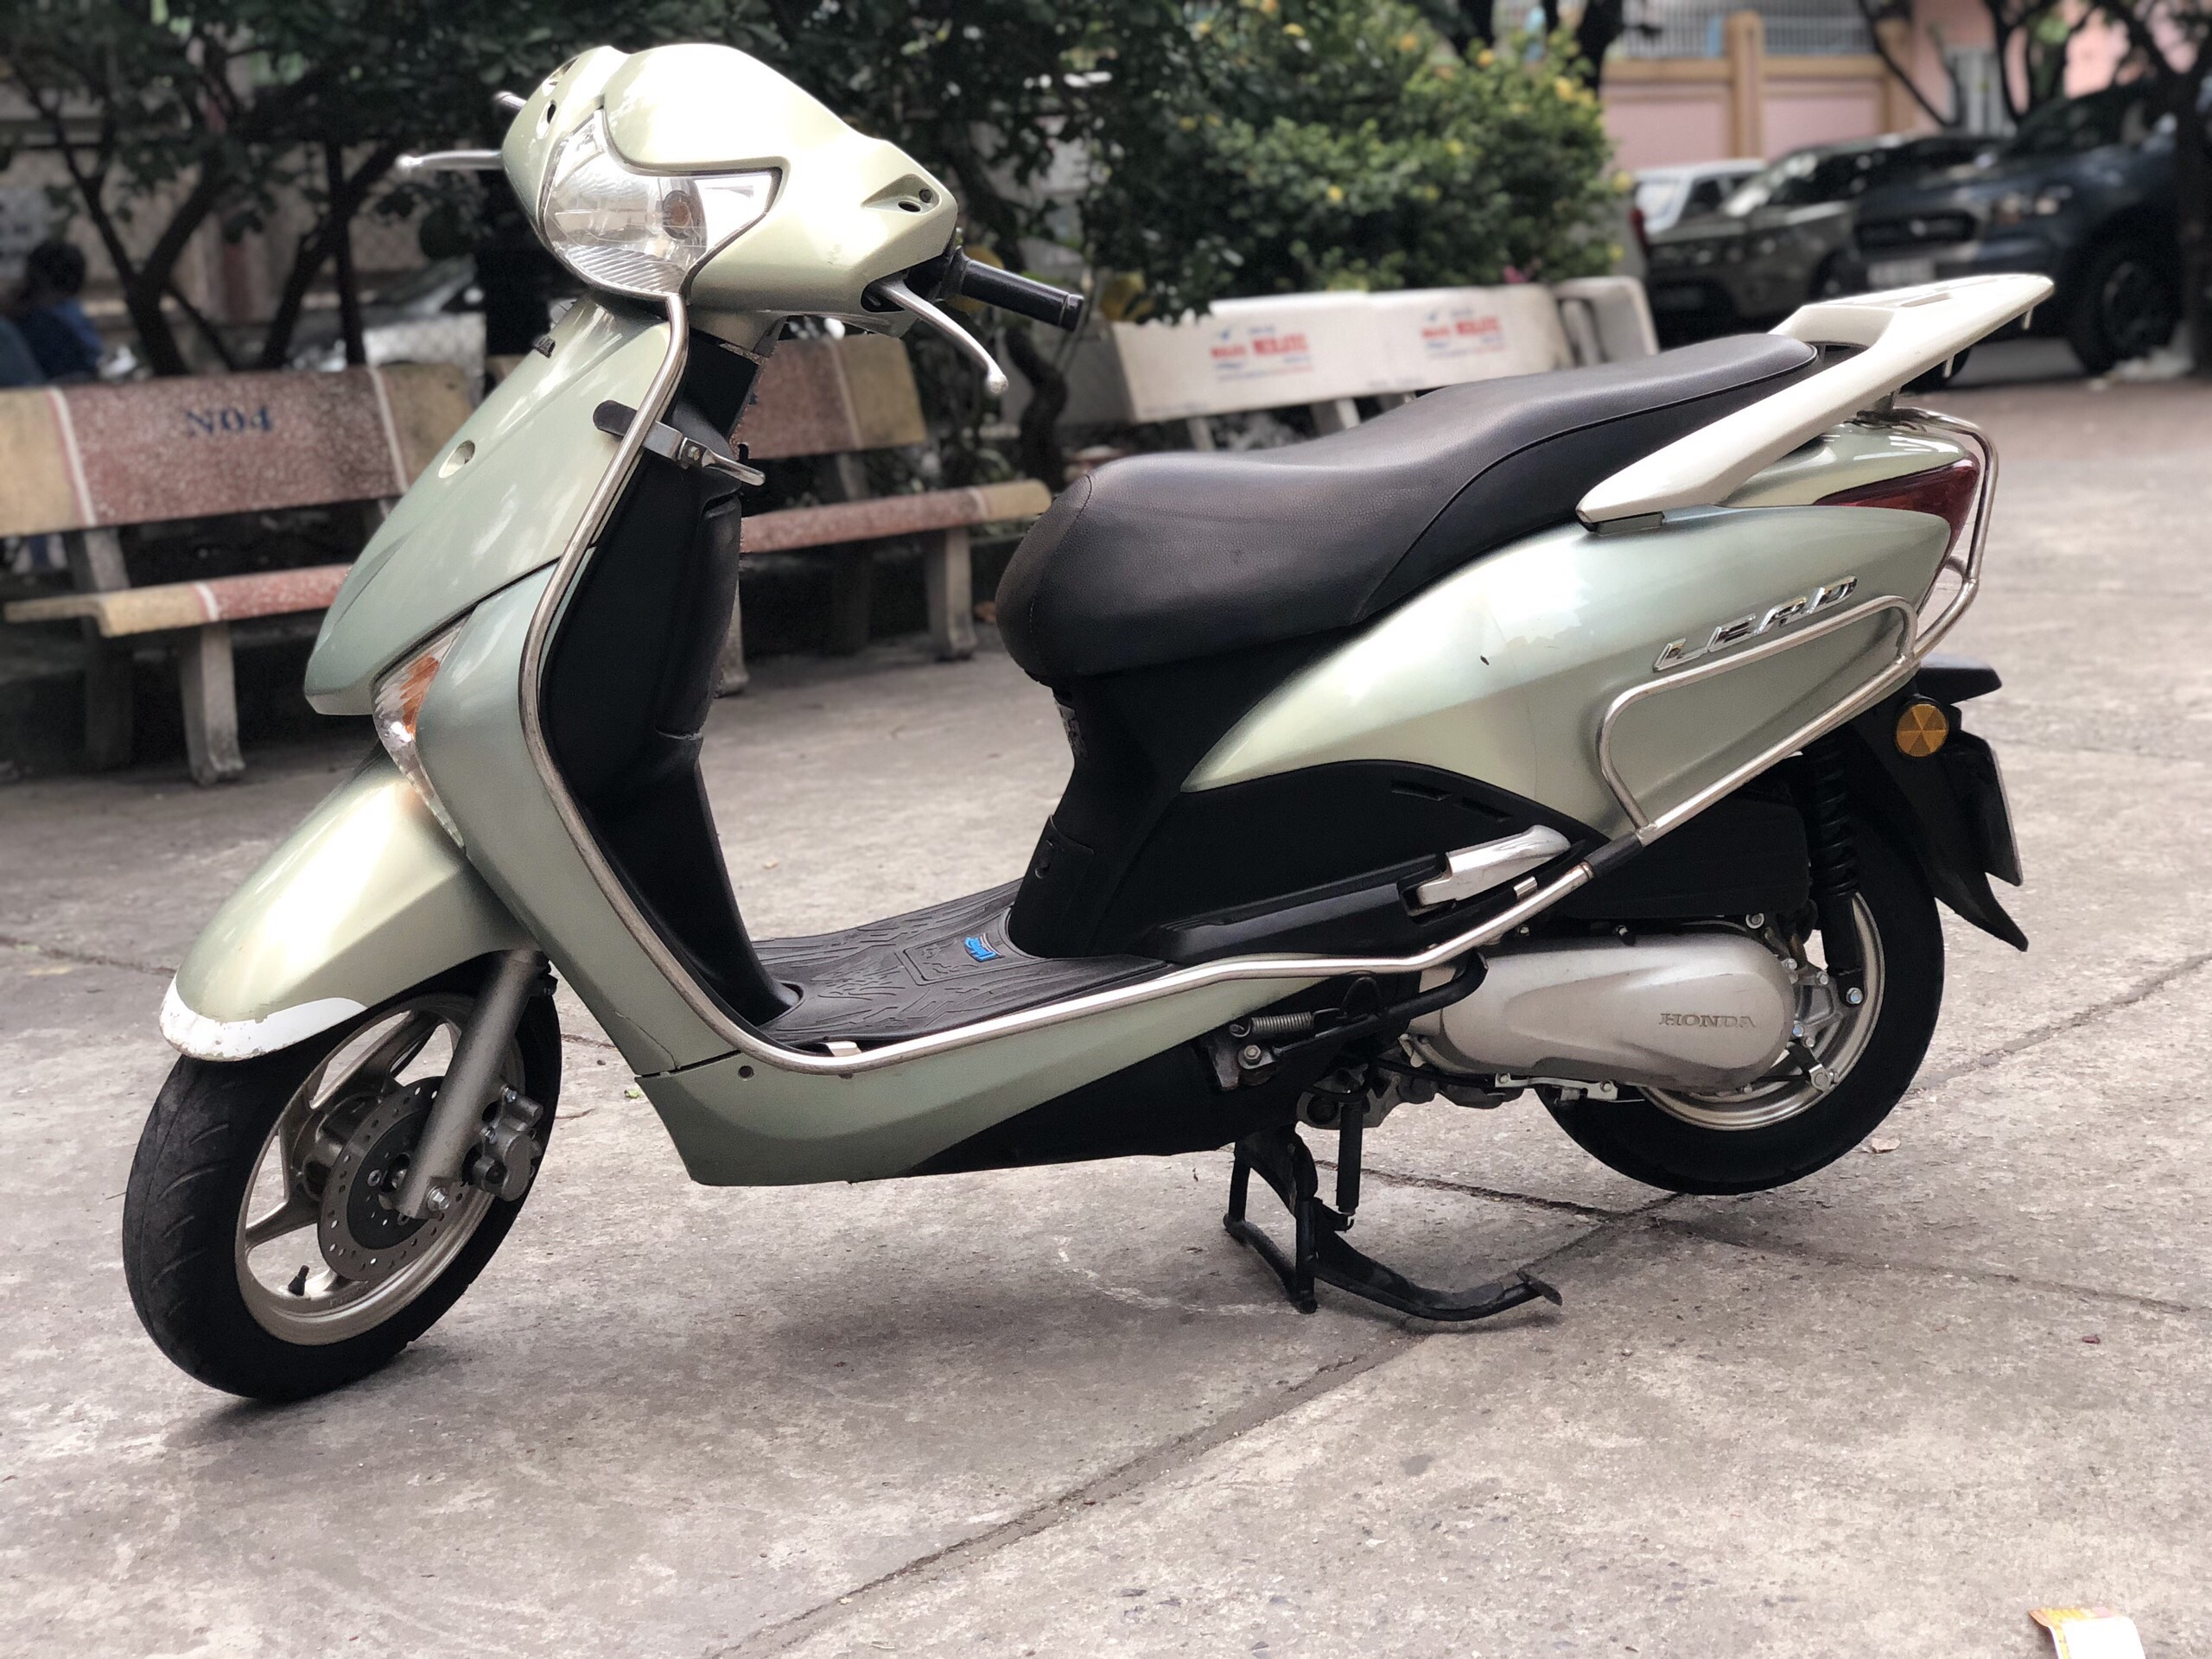 Honda Lead Fi đời 2010 màu bạc BSTP  Xe  bán tại Trịnh Đông  xe cũ giá  rẻ xe máy cũ giá rẻ xe ga giá rẻ xe tay ga